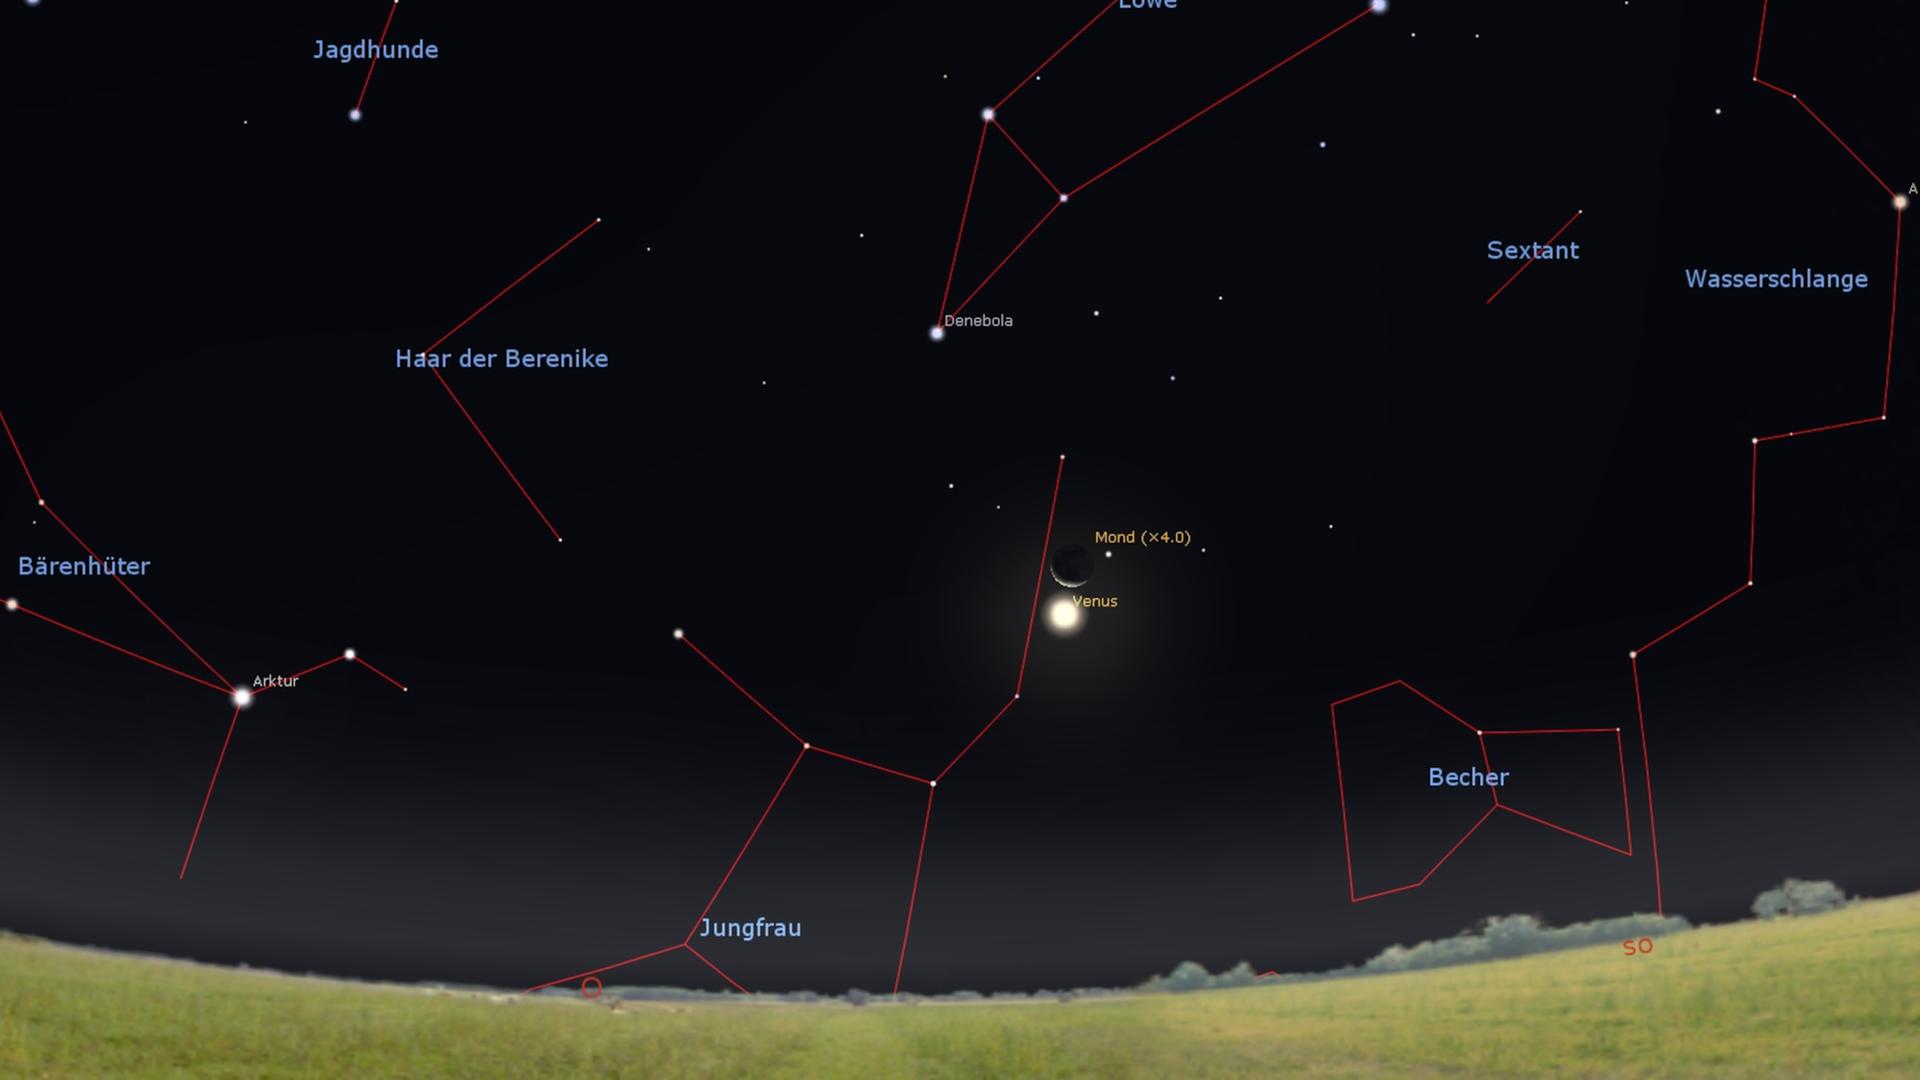 Der Osthimmel am frühen Morgen: Die Mondsichel (vierfach vergrößert dargestellt) und die Venus stehen schon dicht nebeneinander.